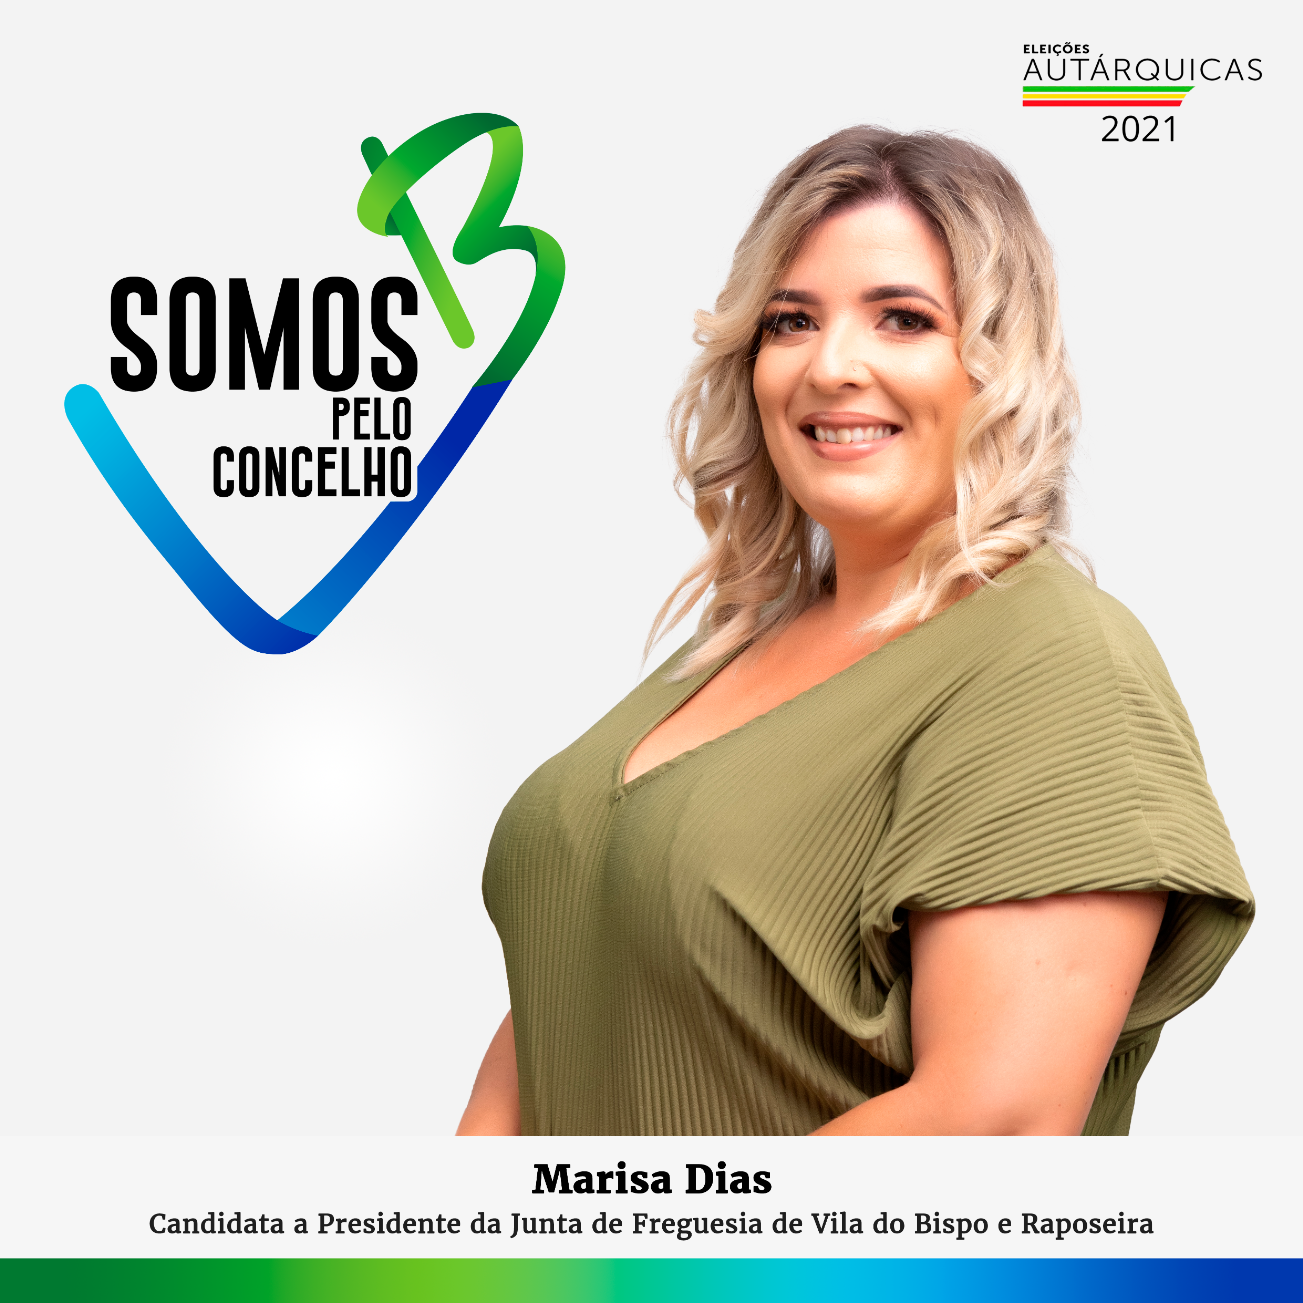 Vila do Bispo: Vereadora da Câmara Municipal Marisa Dias é candidata à Junta de Freguesia pelo movimento "Somos pelo Concelho"